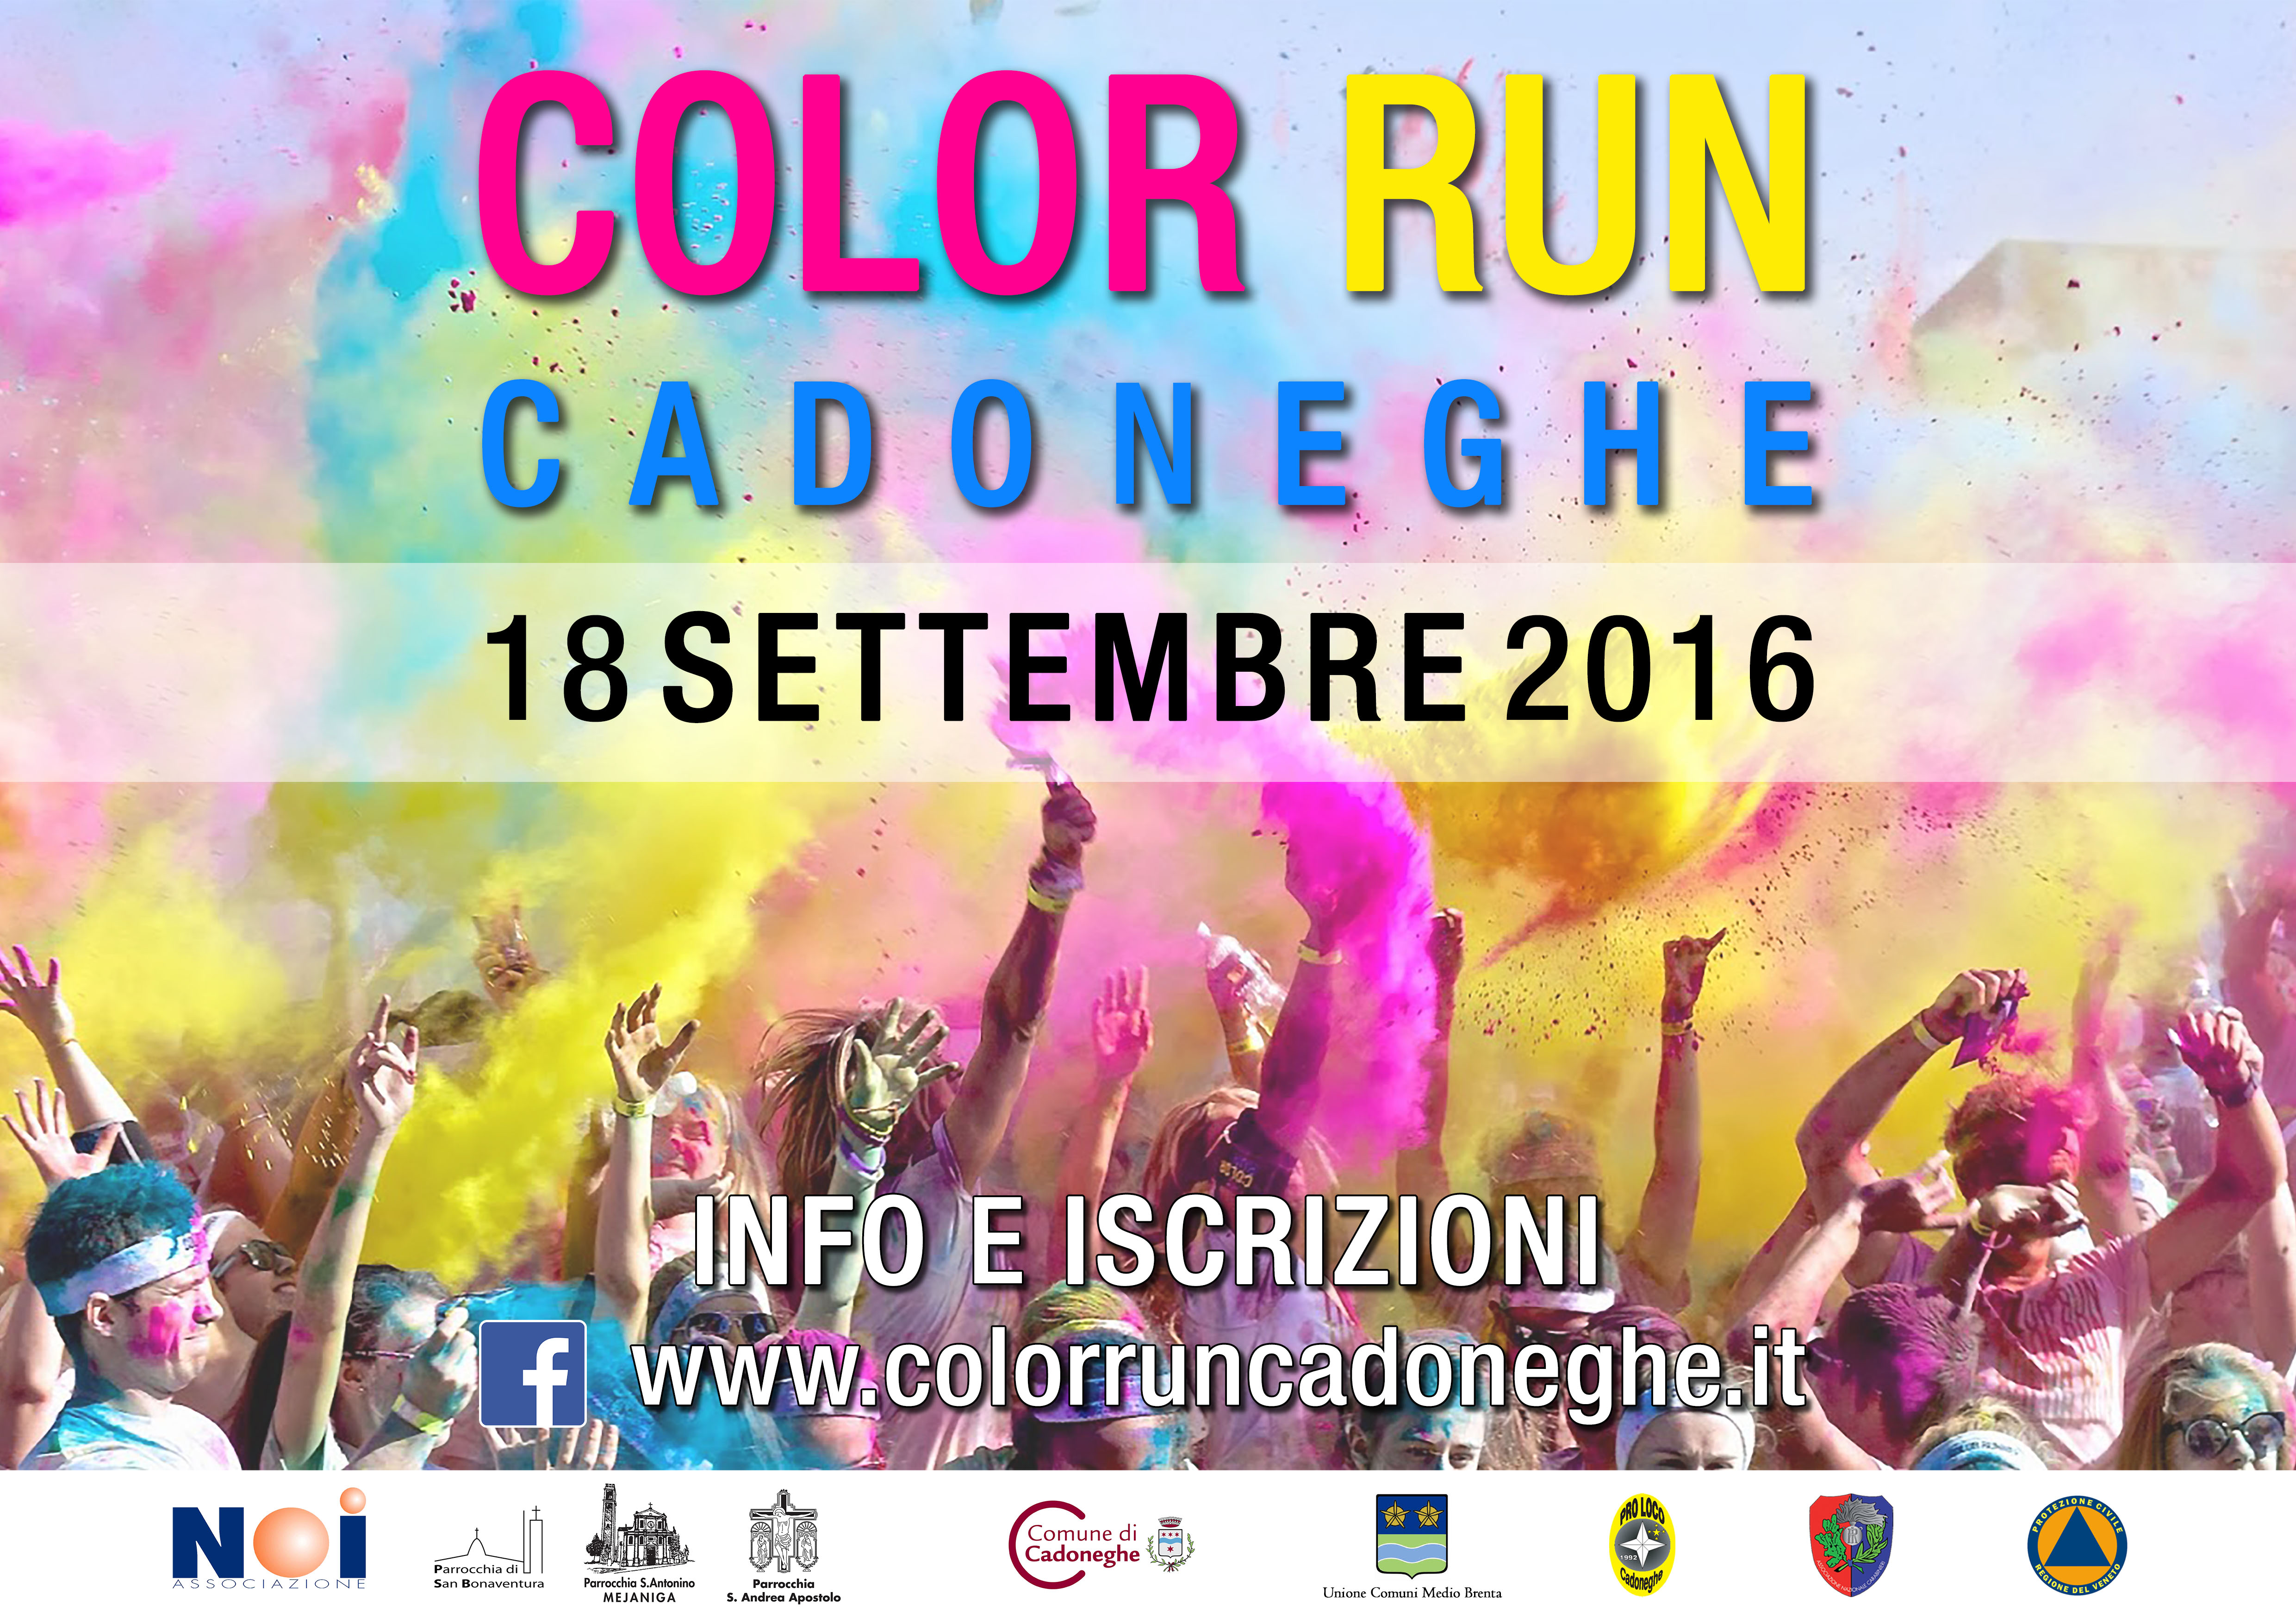 Color Run Cadoneghe: 18/09/2016 - Colora la tua corsa!!!